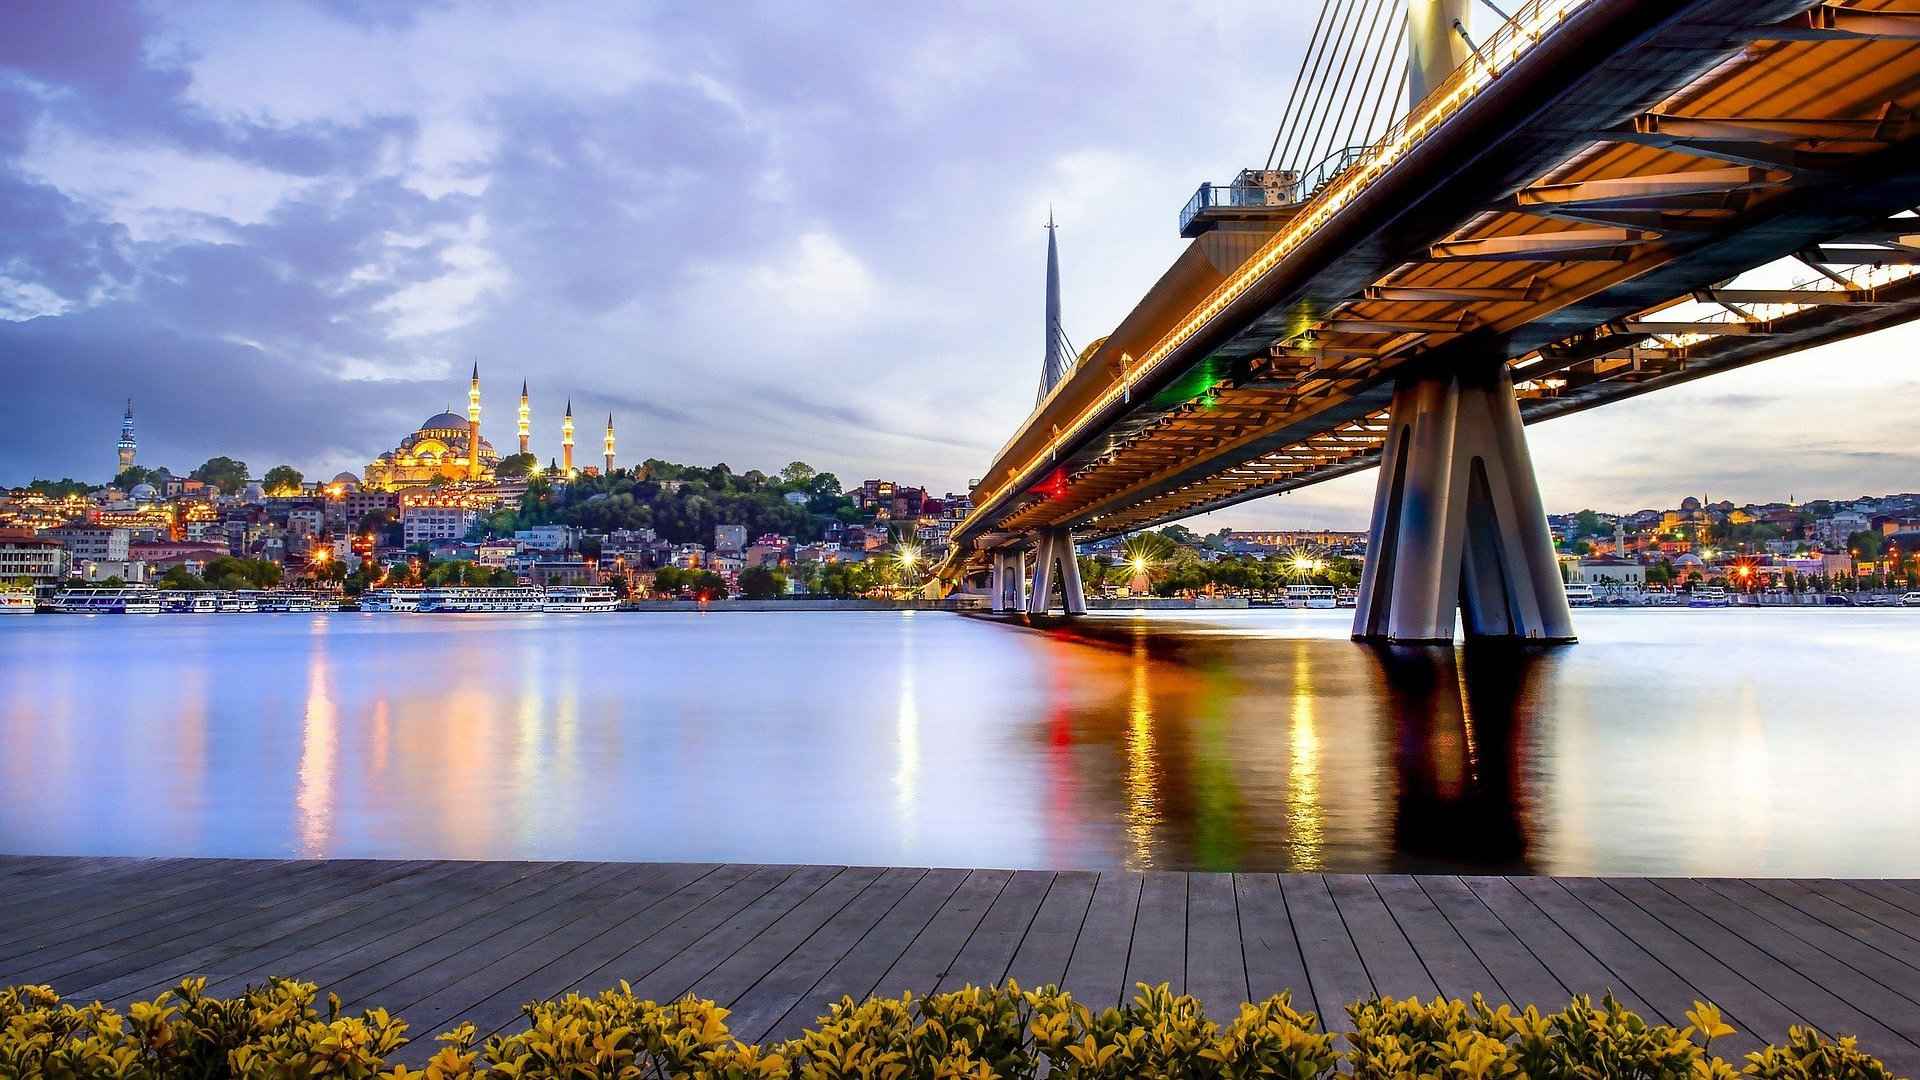 伊斯坦布尔桥梁灯火唯美桌面壁纸图片-